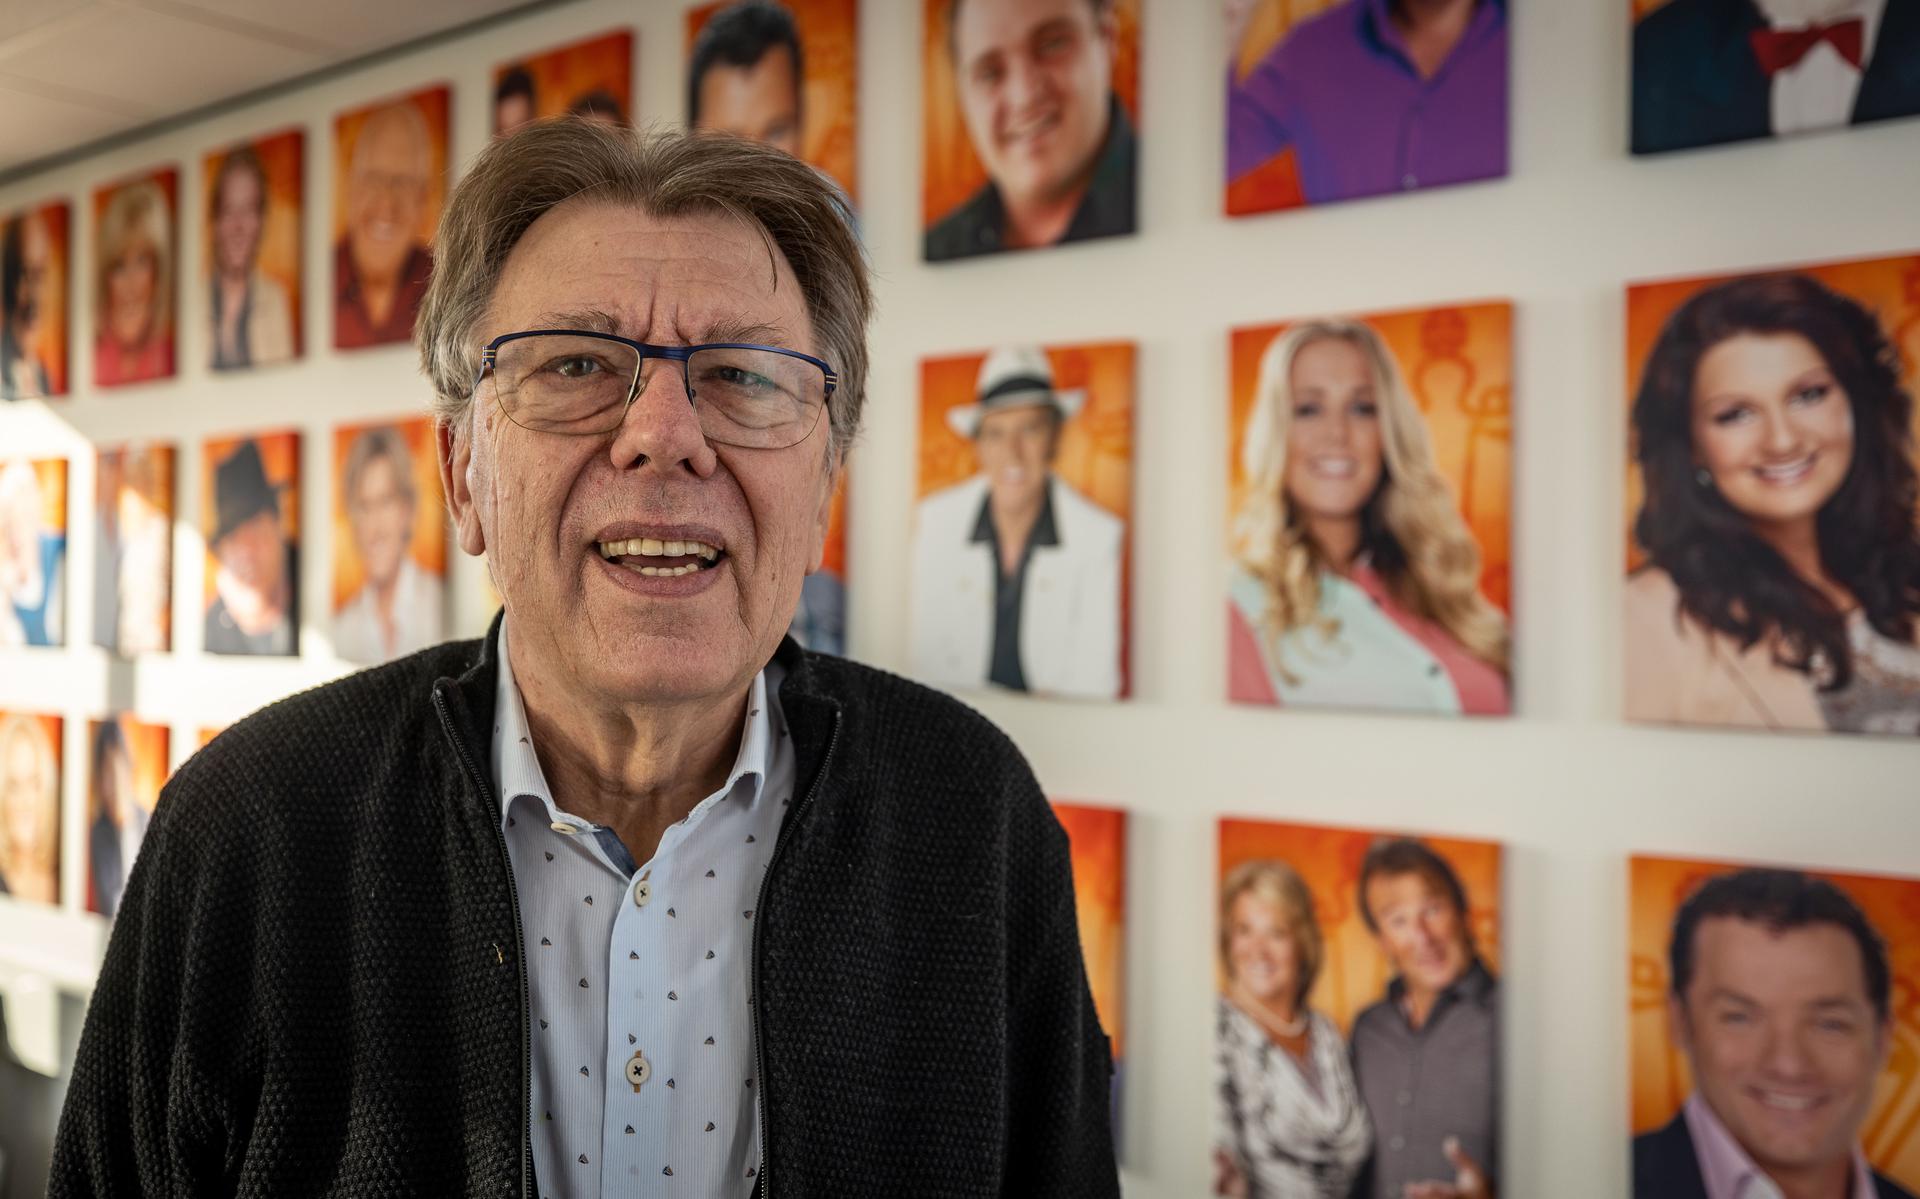 Directeur Gerard Ardesch bij een fotocollage van Nederlandstalige zangers en zangeressen.